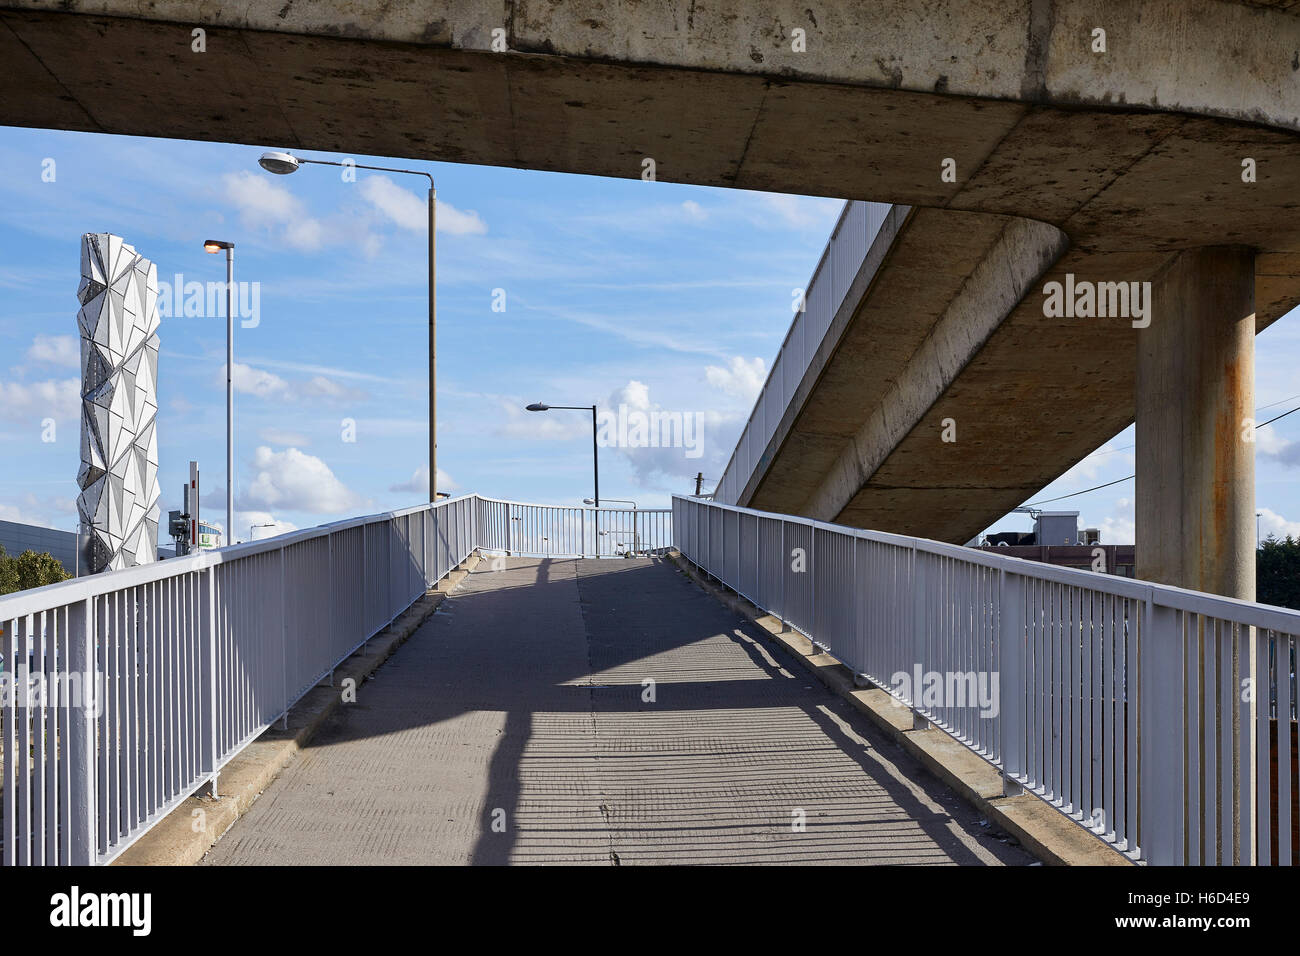 Blick auf das Energiezentrum Betonbrücke gegenübergestellt. Greenwich-Energie-Zentrum / optische Mantel, Greenwich, Großbritannien. Architekt: C.f. Møller / Conrad Shawcross, 2016. Stockfoto